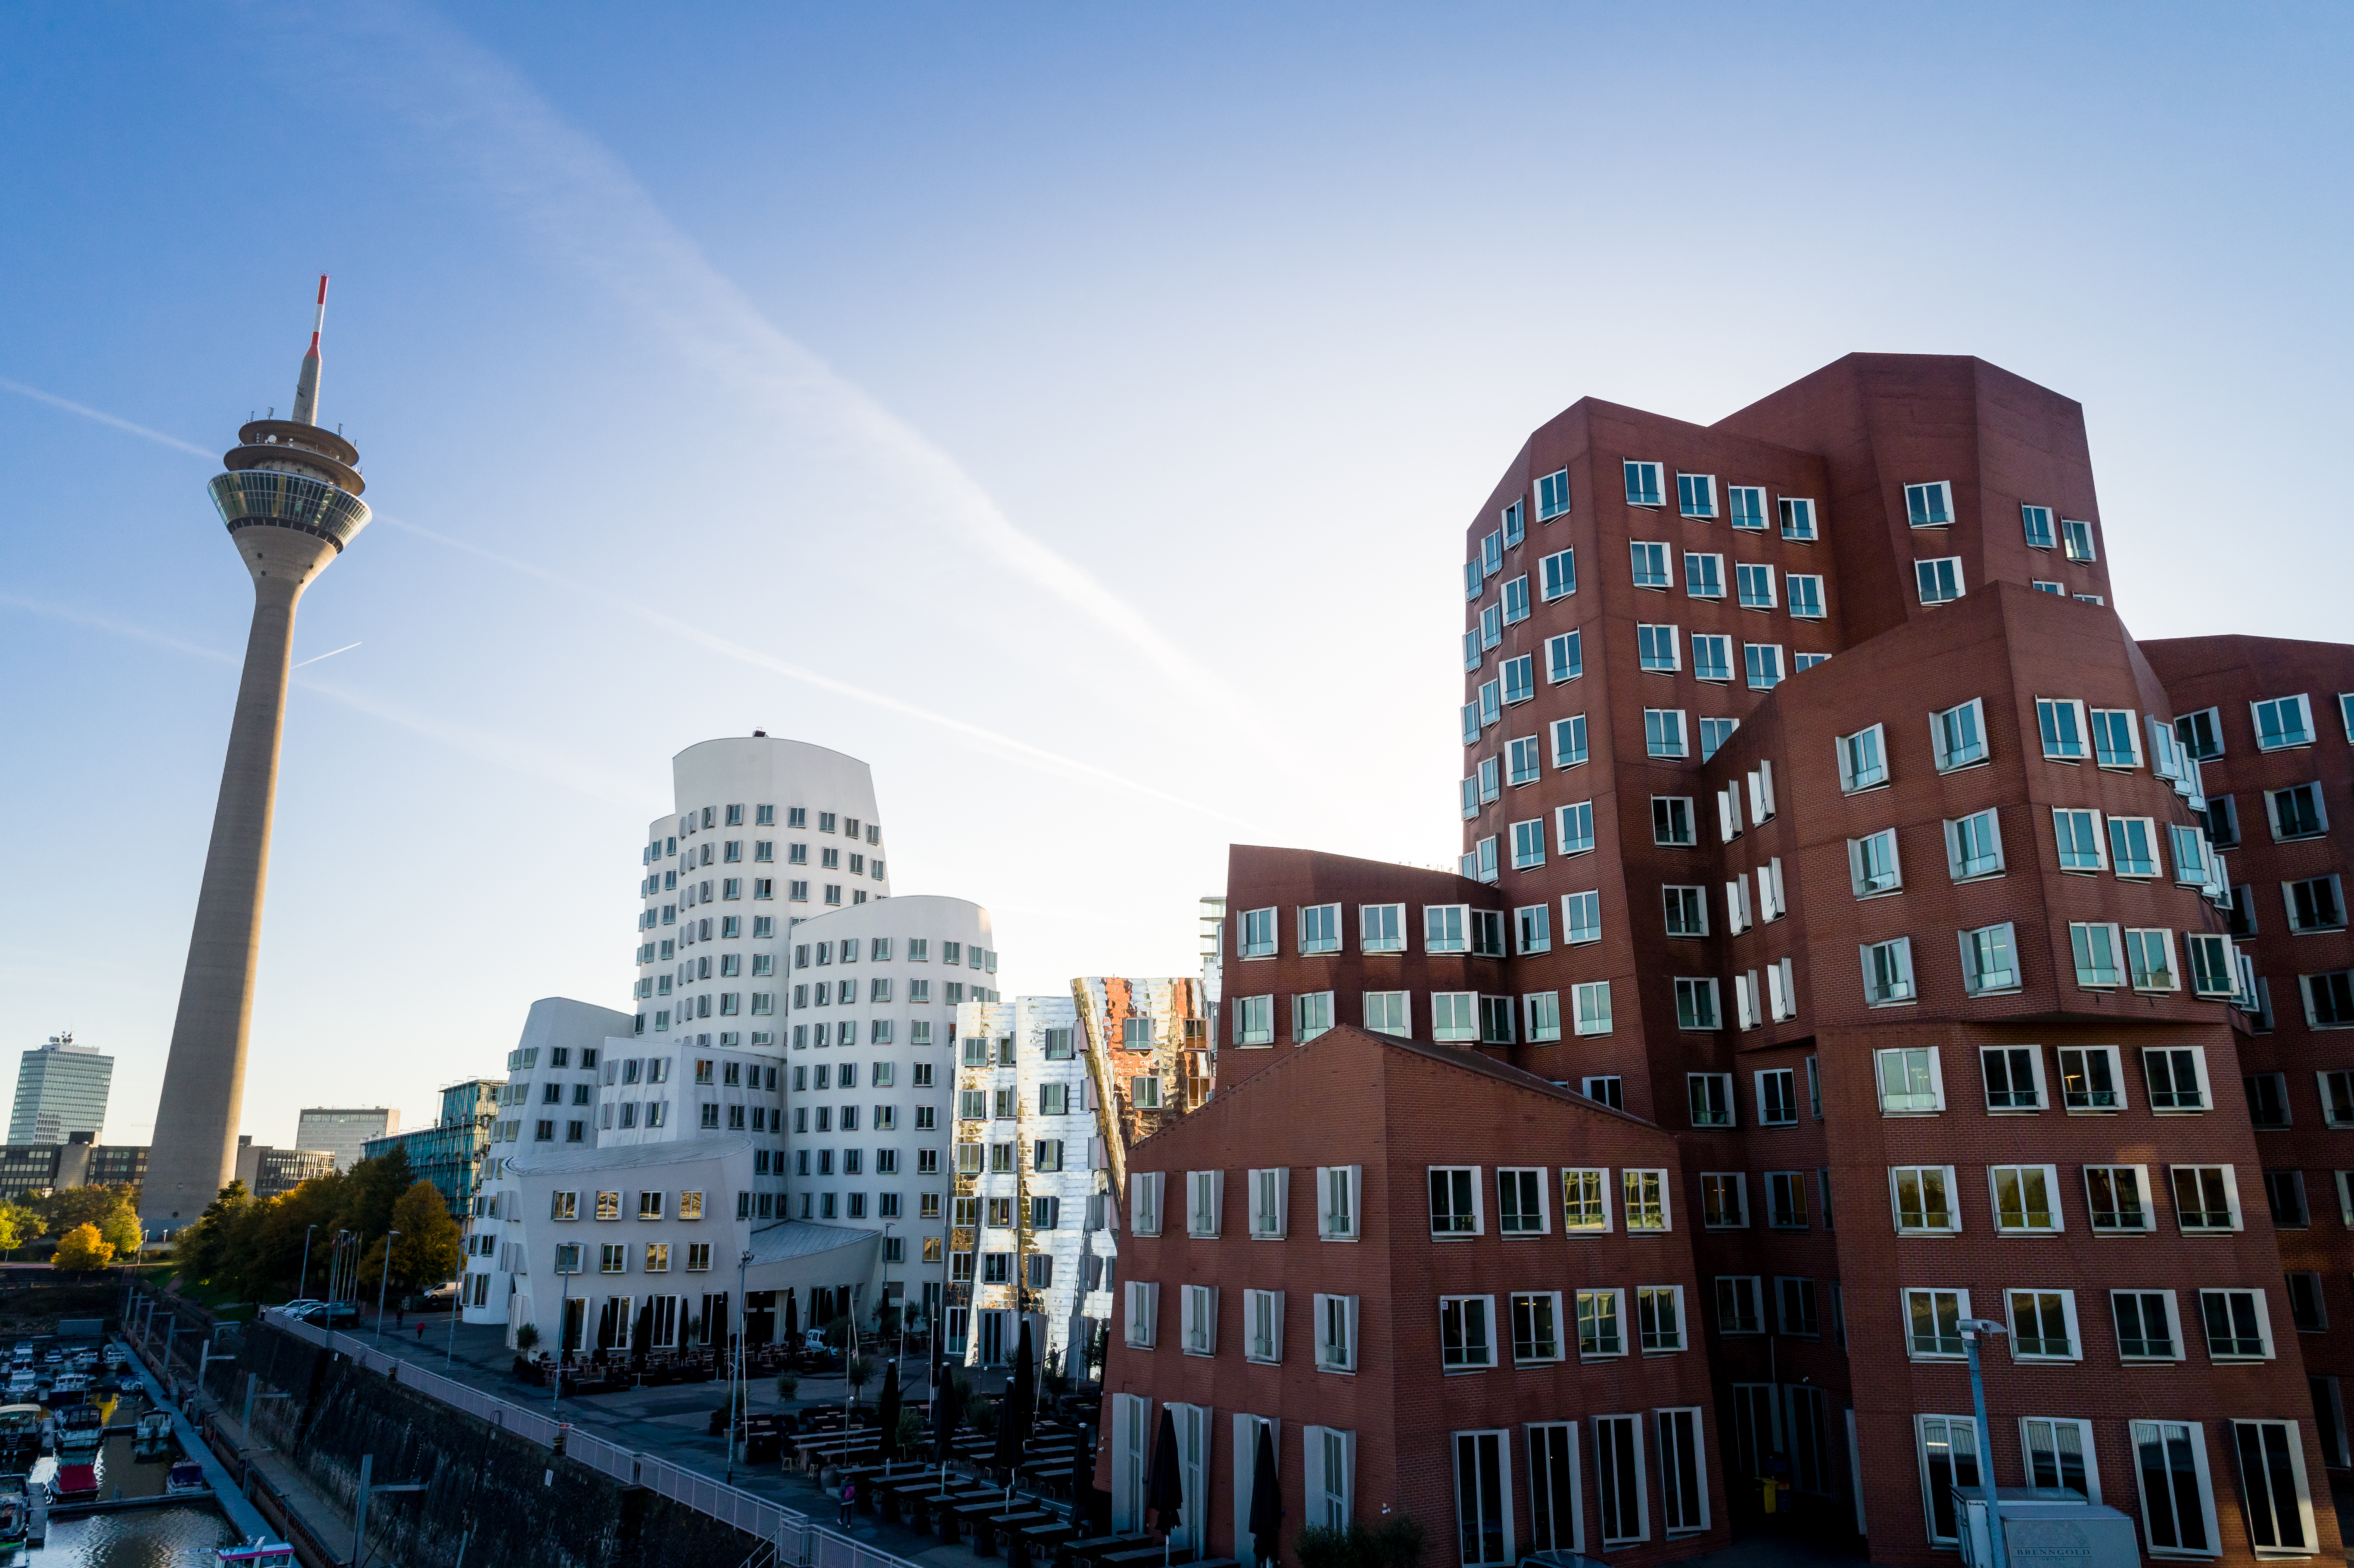 Schief stehende Häuser des Architekten Frank Gehry im Medienhafen in Düsseldorf